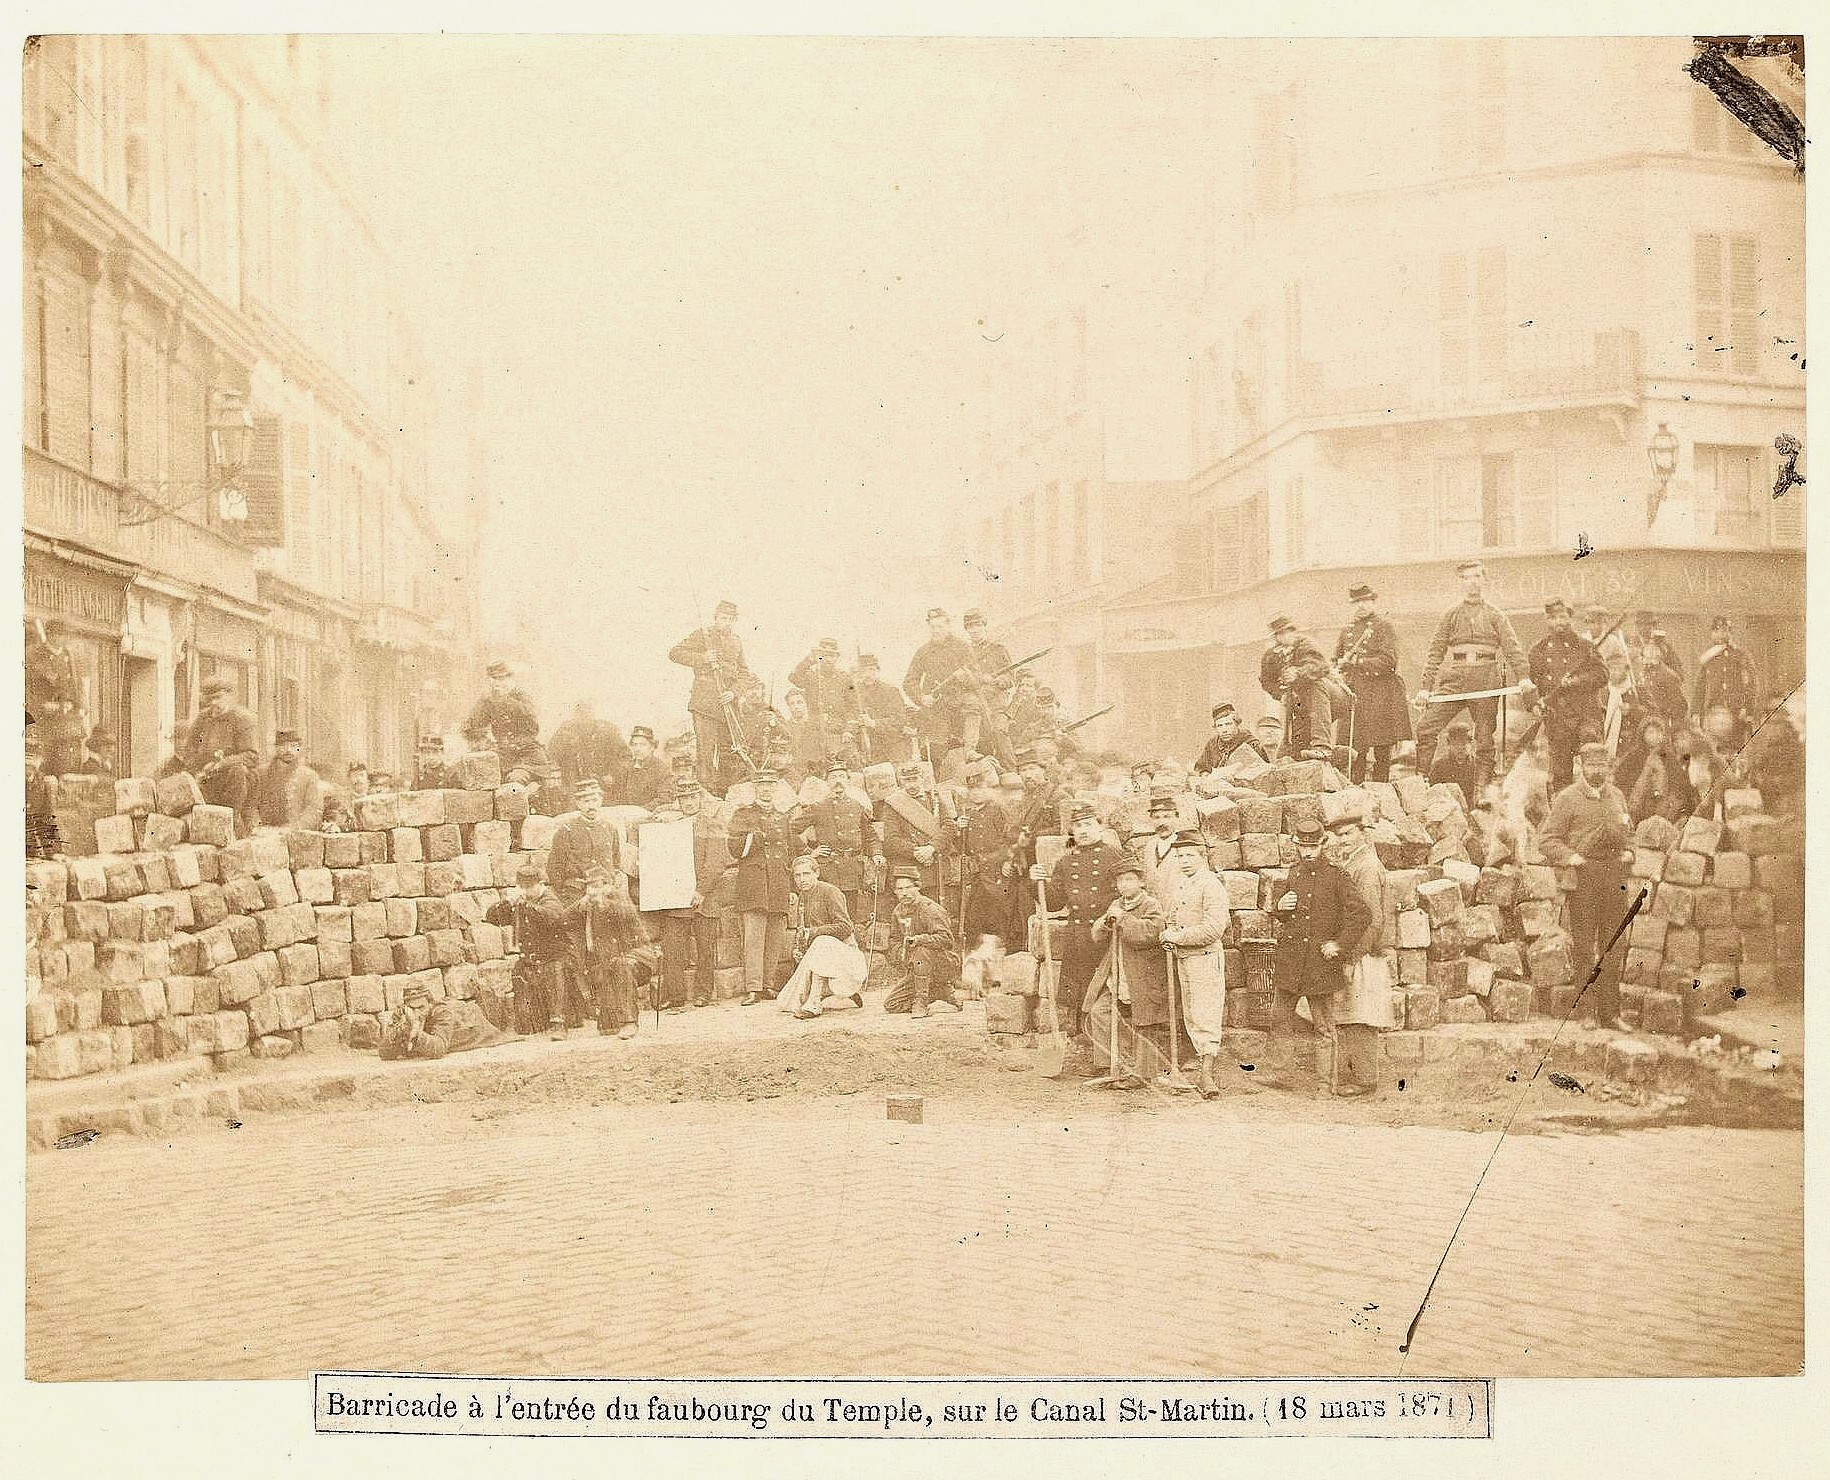 Barricade à l'entree du faubourg du temple sur le canal St-Martin le18 mars 1871 (Image anonyme Musée Carnavalet)